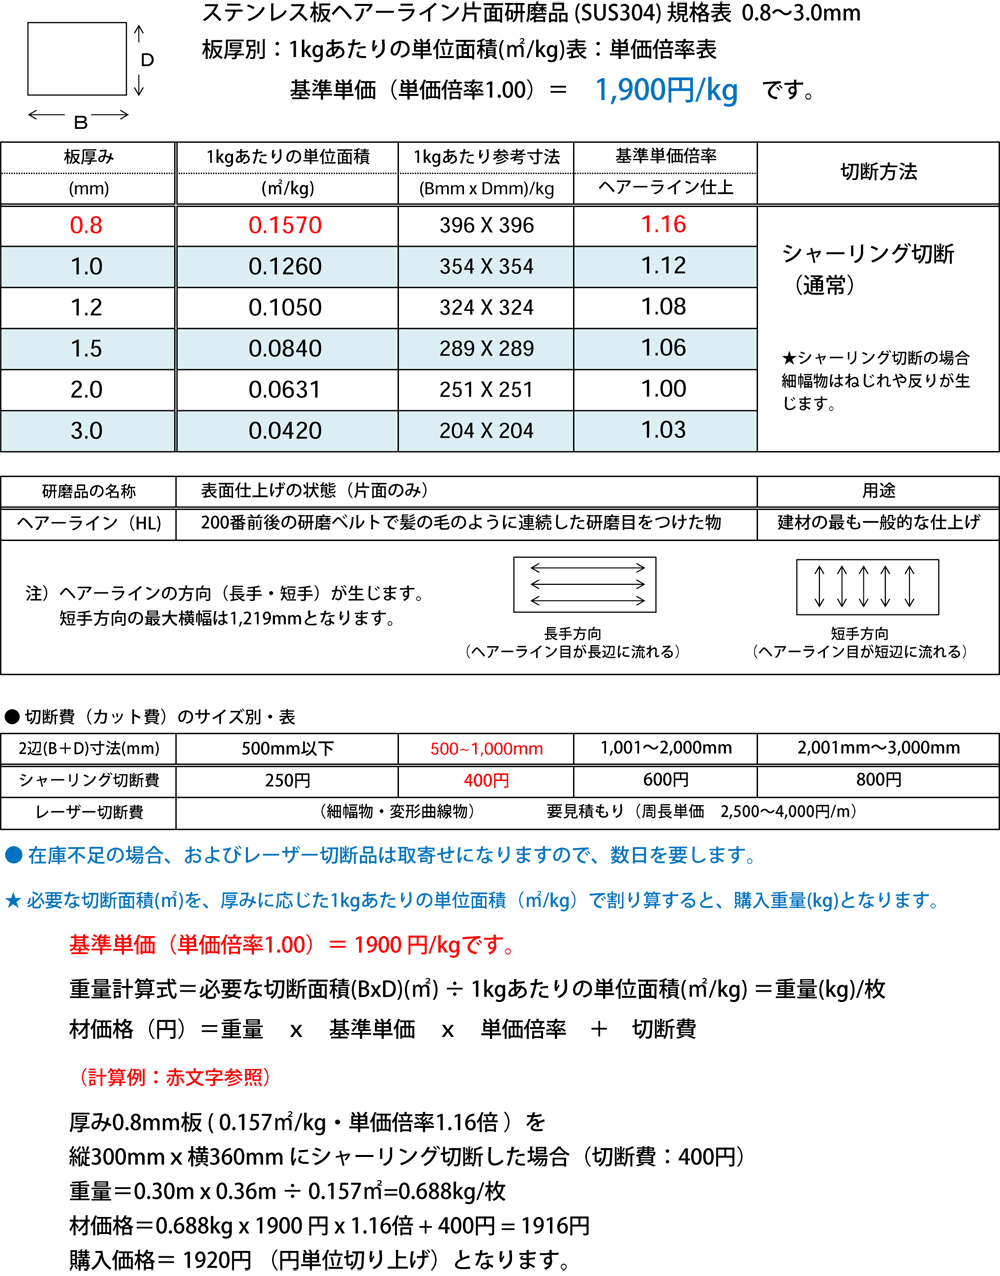 日本限定 アナハイム 厨房用設備販売ステンレス 420J2 切板 板厚